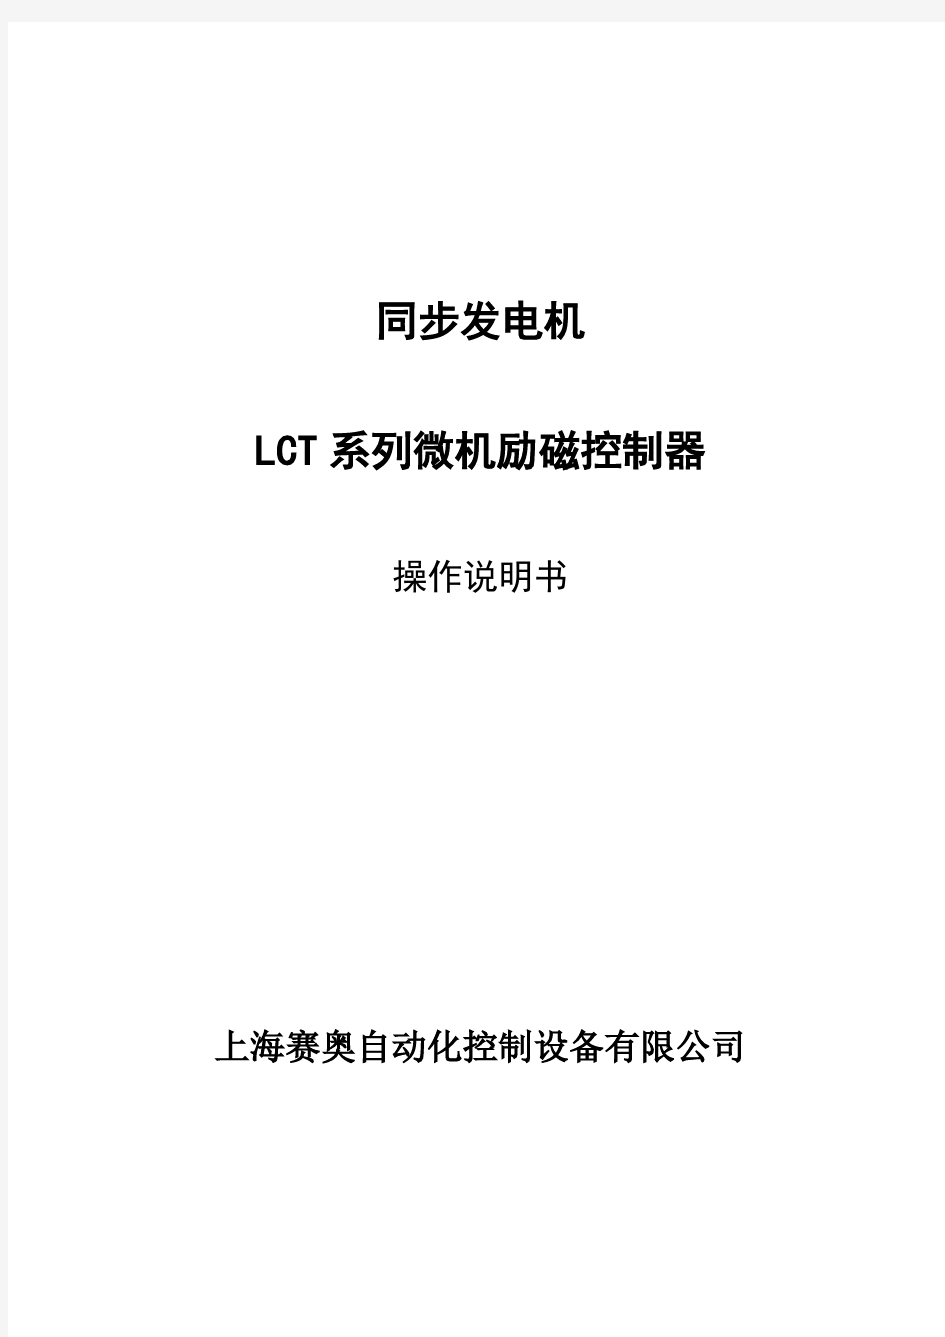 LCTs中小型发电机组励磁操作说明书(中文版) 20100301